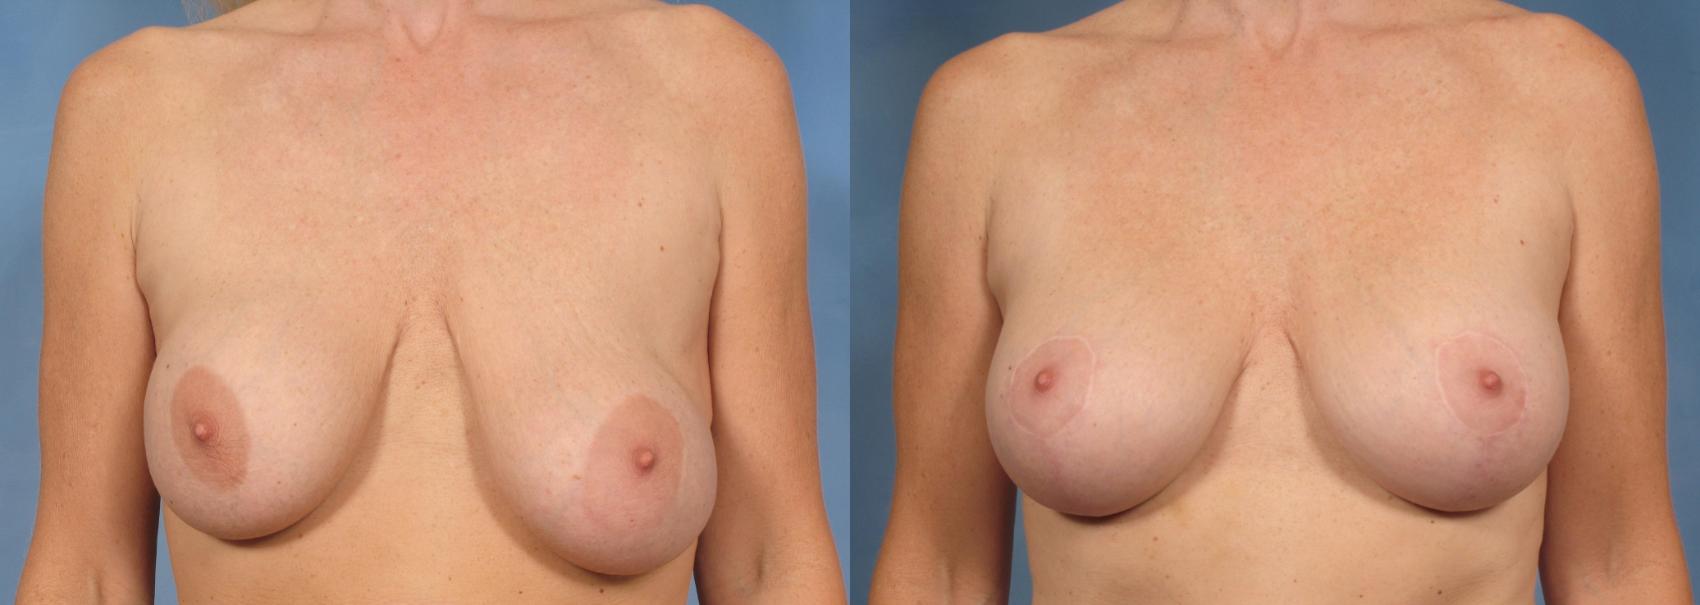 乳房植入物交换/翻修前后病例131视图1那不勒斯和佛罗里达州迈尔斯堡的视图